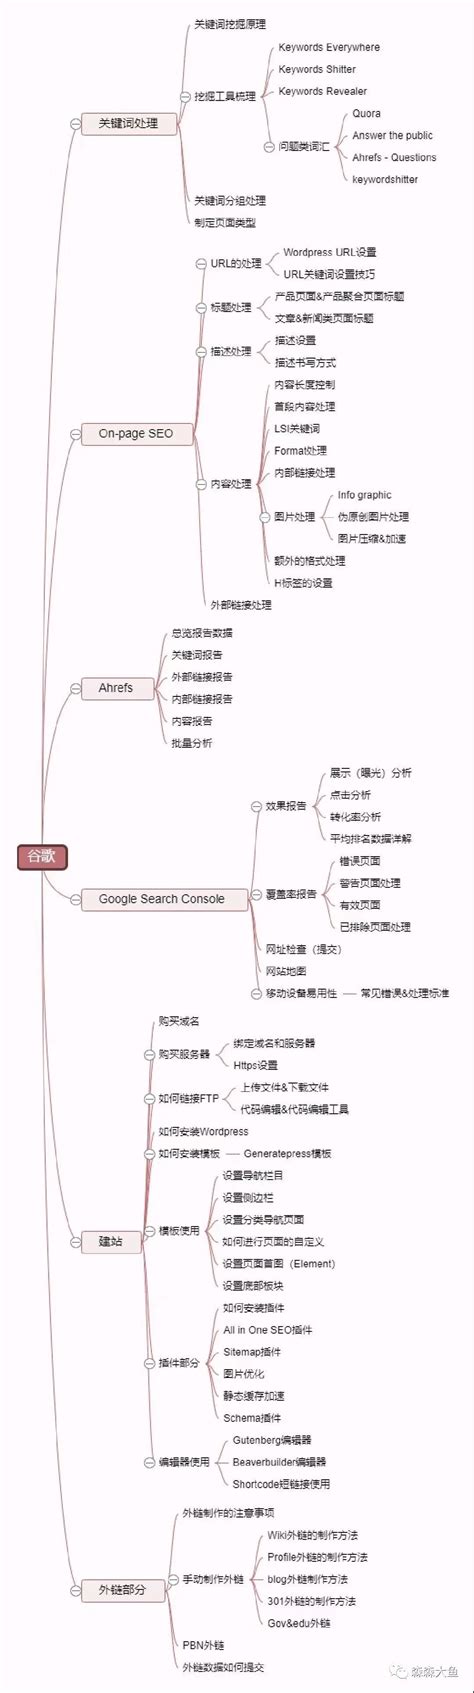 Google seo 培训班教程大纲预览图 - 编程网